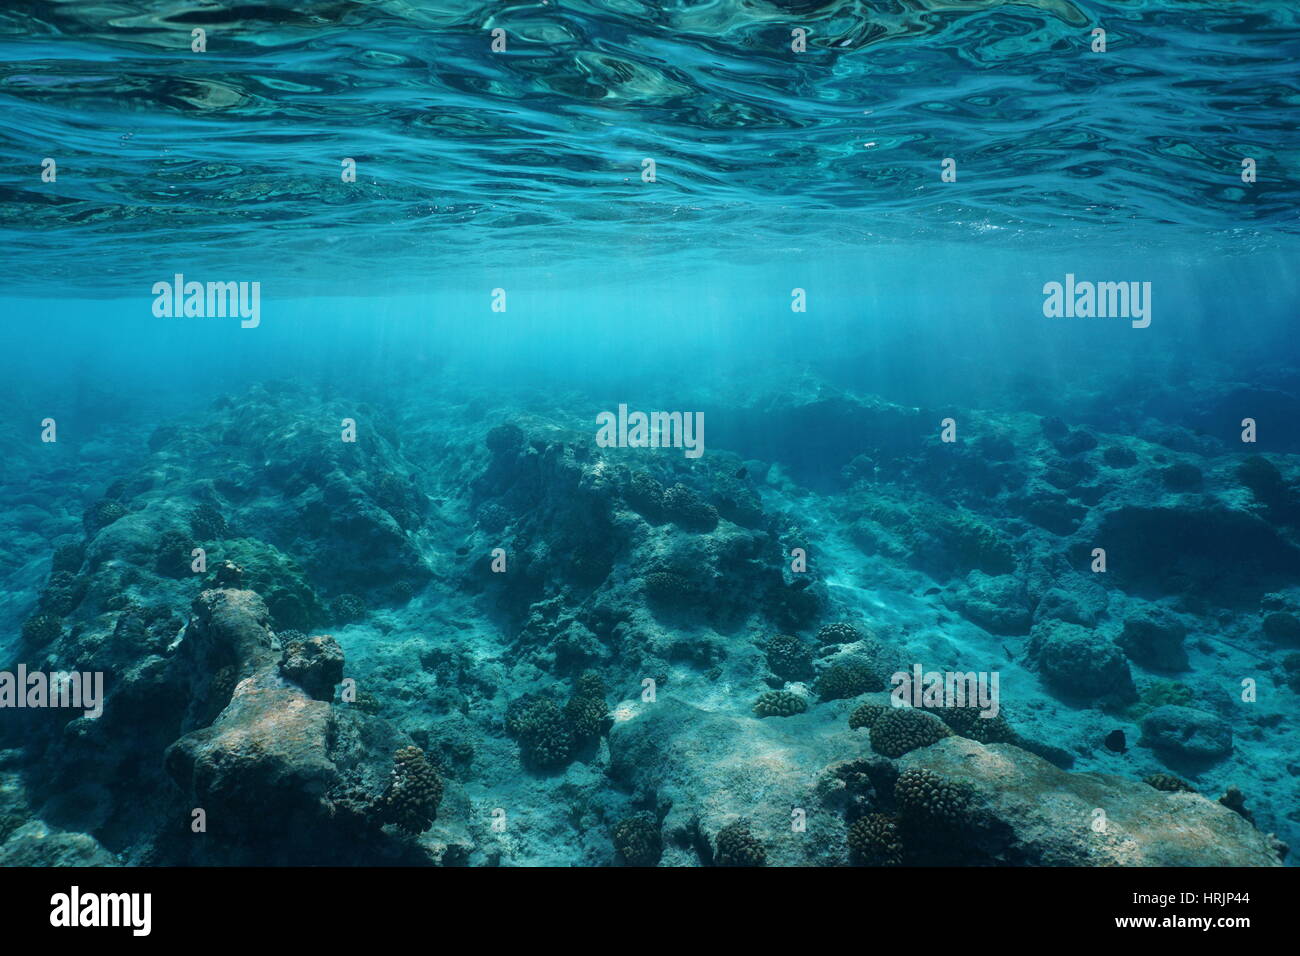 La surface de la mer sous l'eau claire avec la lumière naturelle du soleil et des fonds marins rocheux, l'océan Pacifique, l'atoll de Rangiroa, Tuamotu, Polynésie Française Banque D'Images